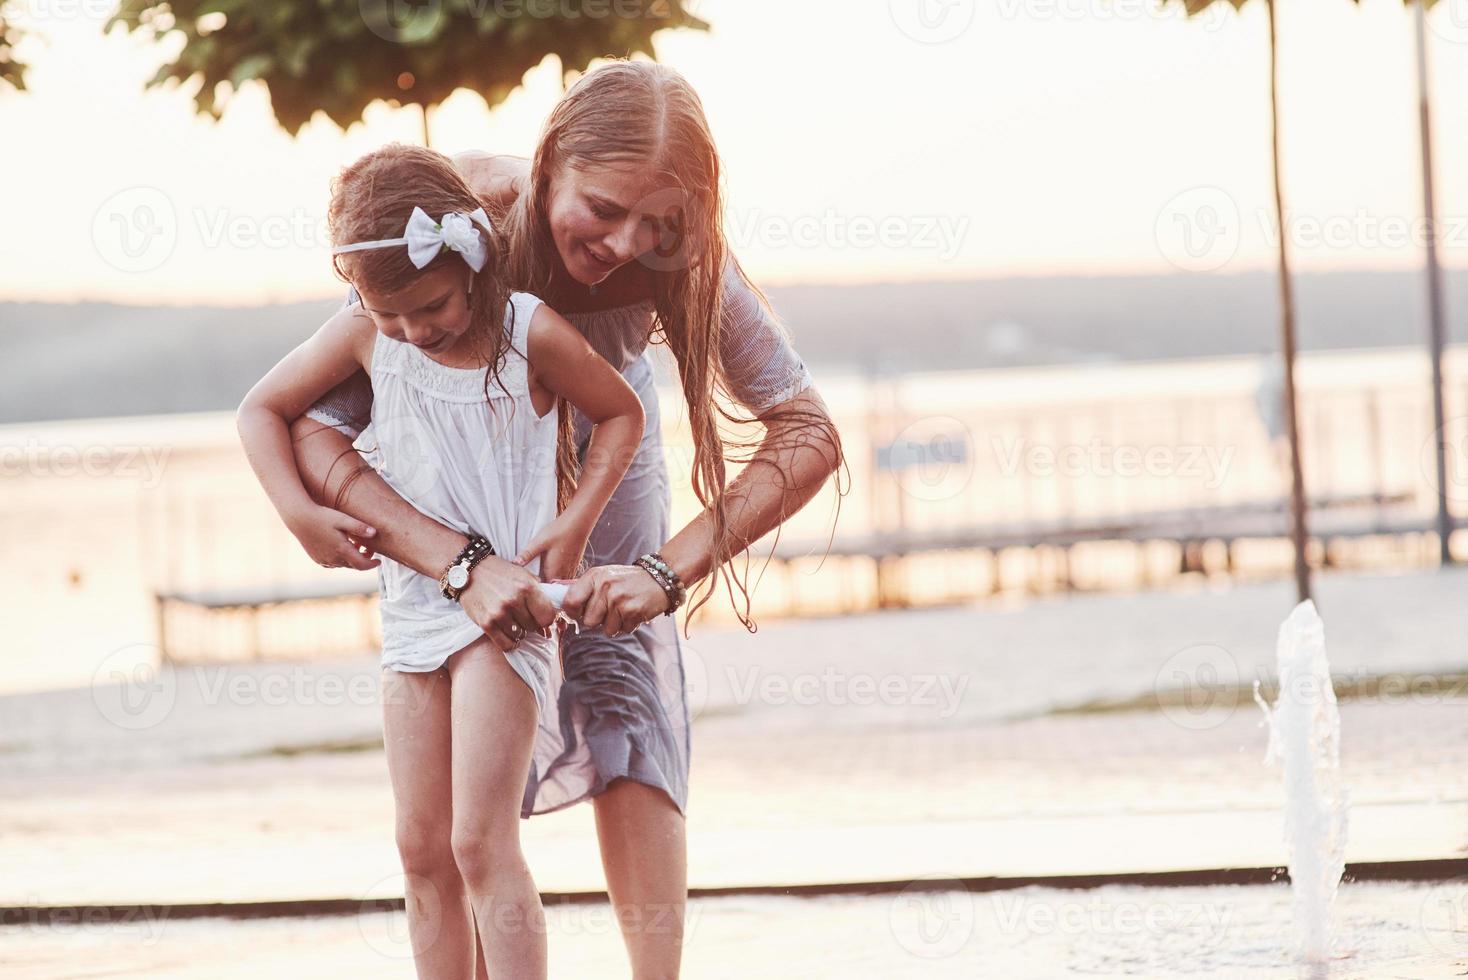 serrer une robe. par une chaude journée ensoleillée, la mère et sa fille décident d'utiliser une fontaine pour se rafraîchir et s'amuser avec photo